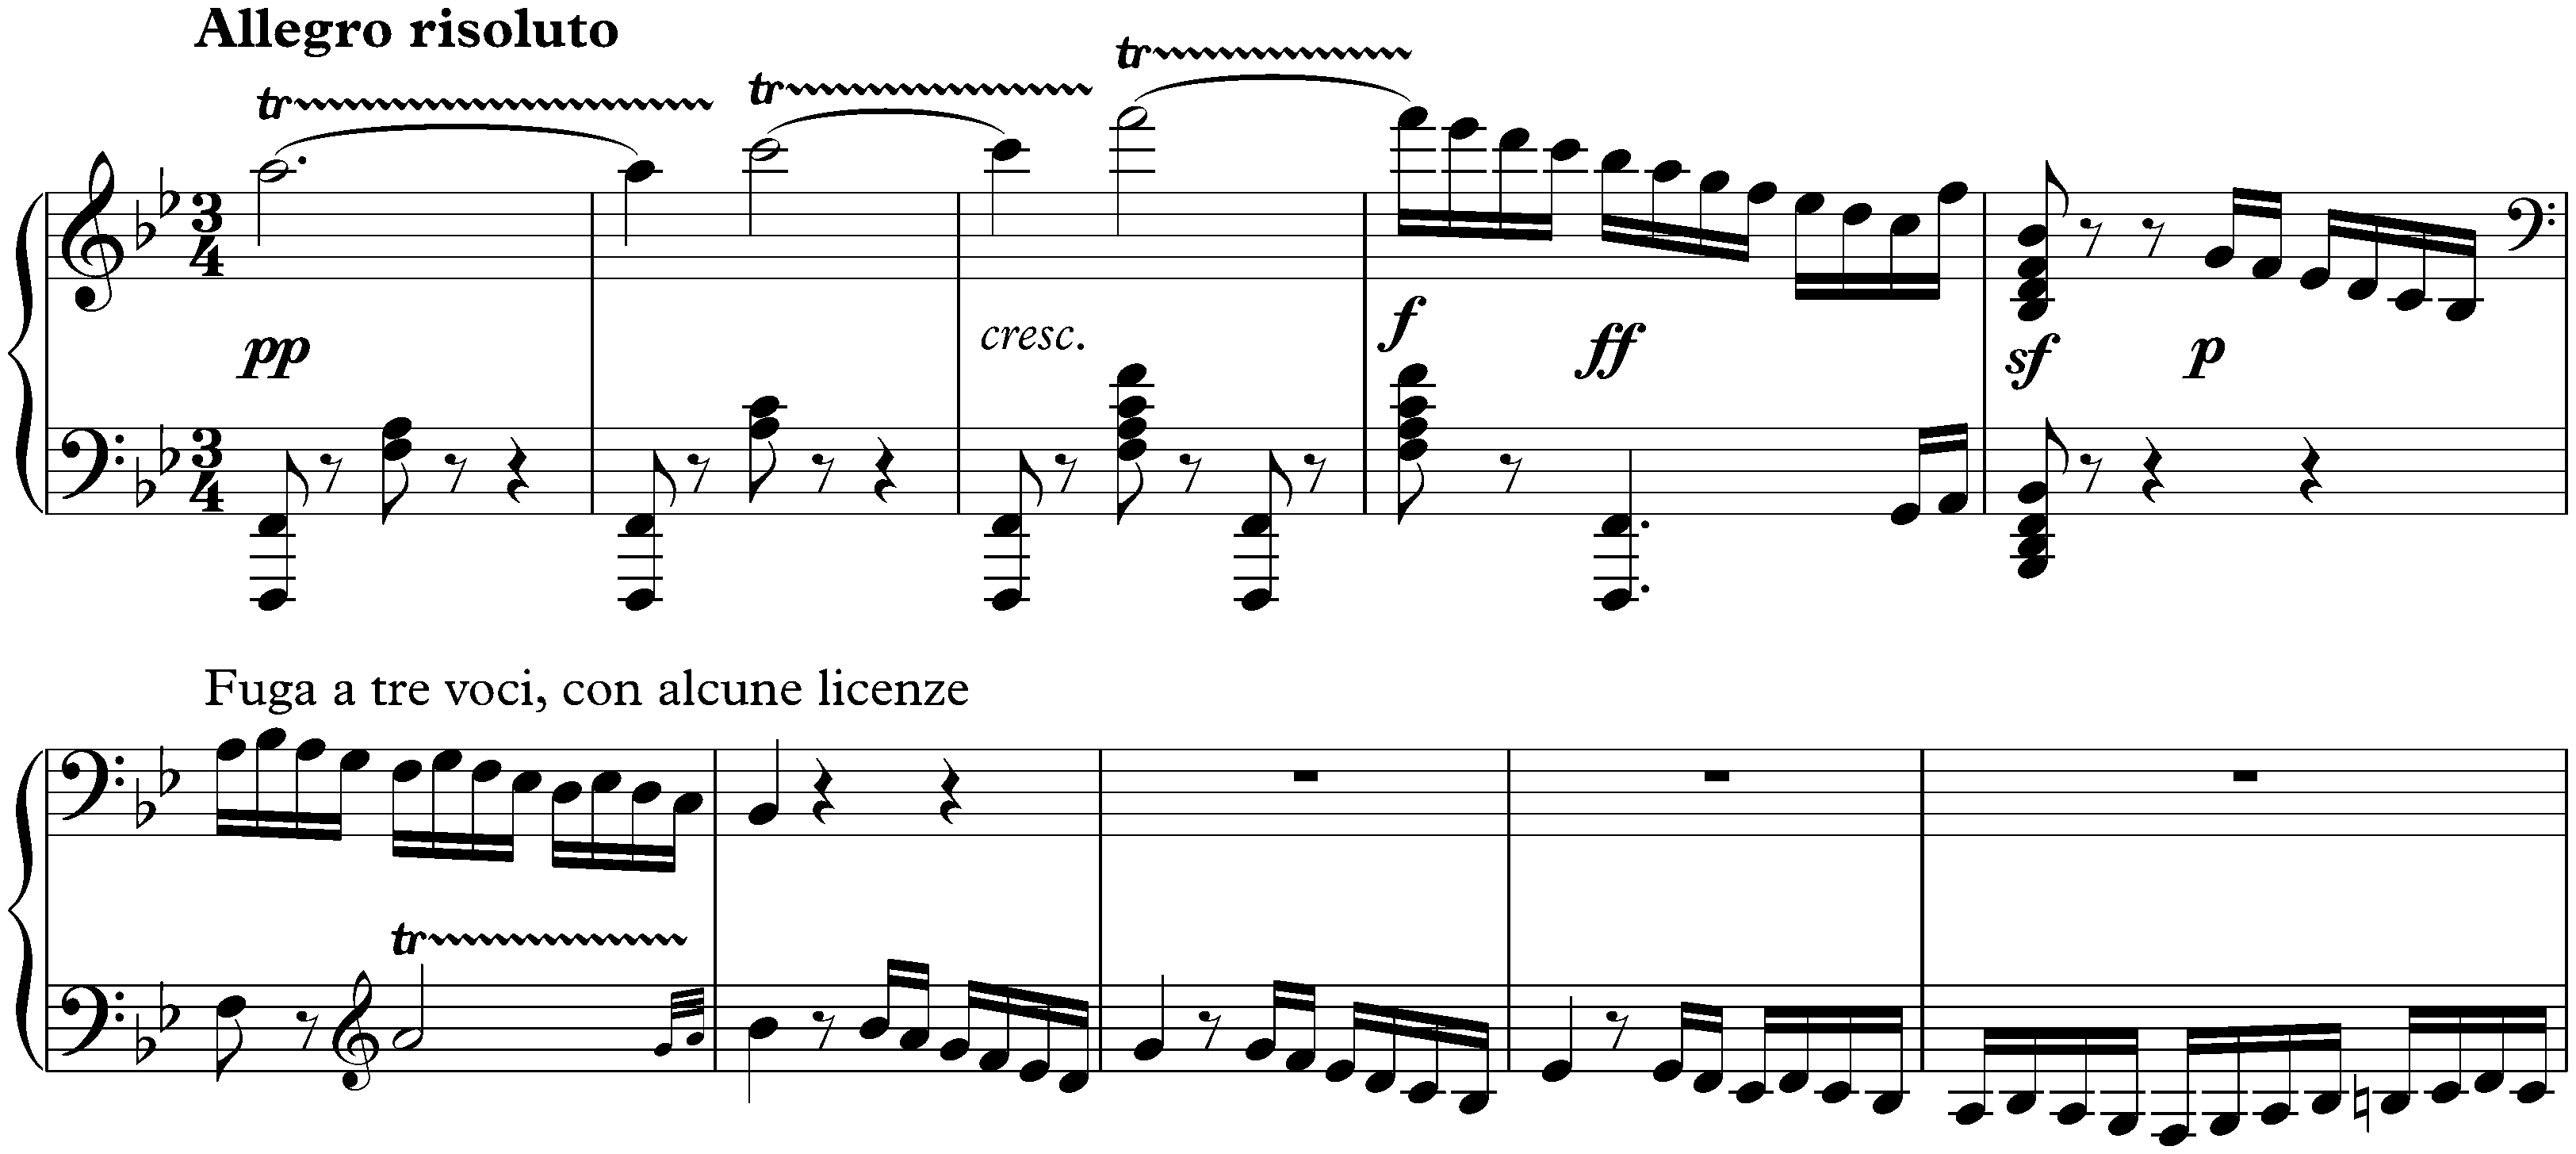 Sonata no. 29 in B-flat major, op. 106 (Hammerklavier); 4. 4. Largo – Allegro risoluto